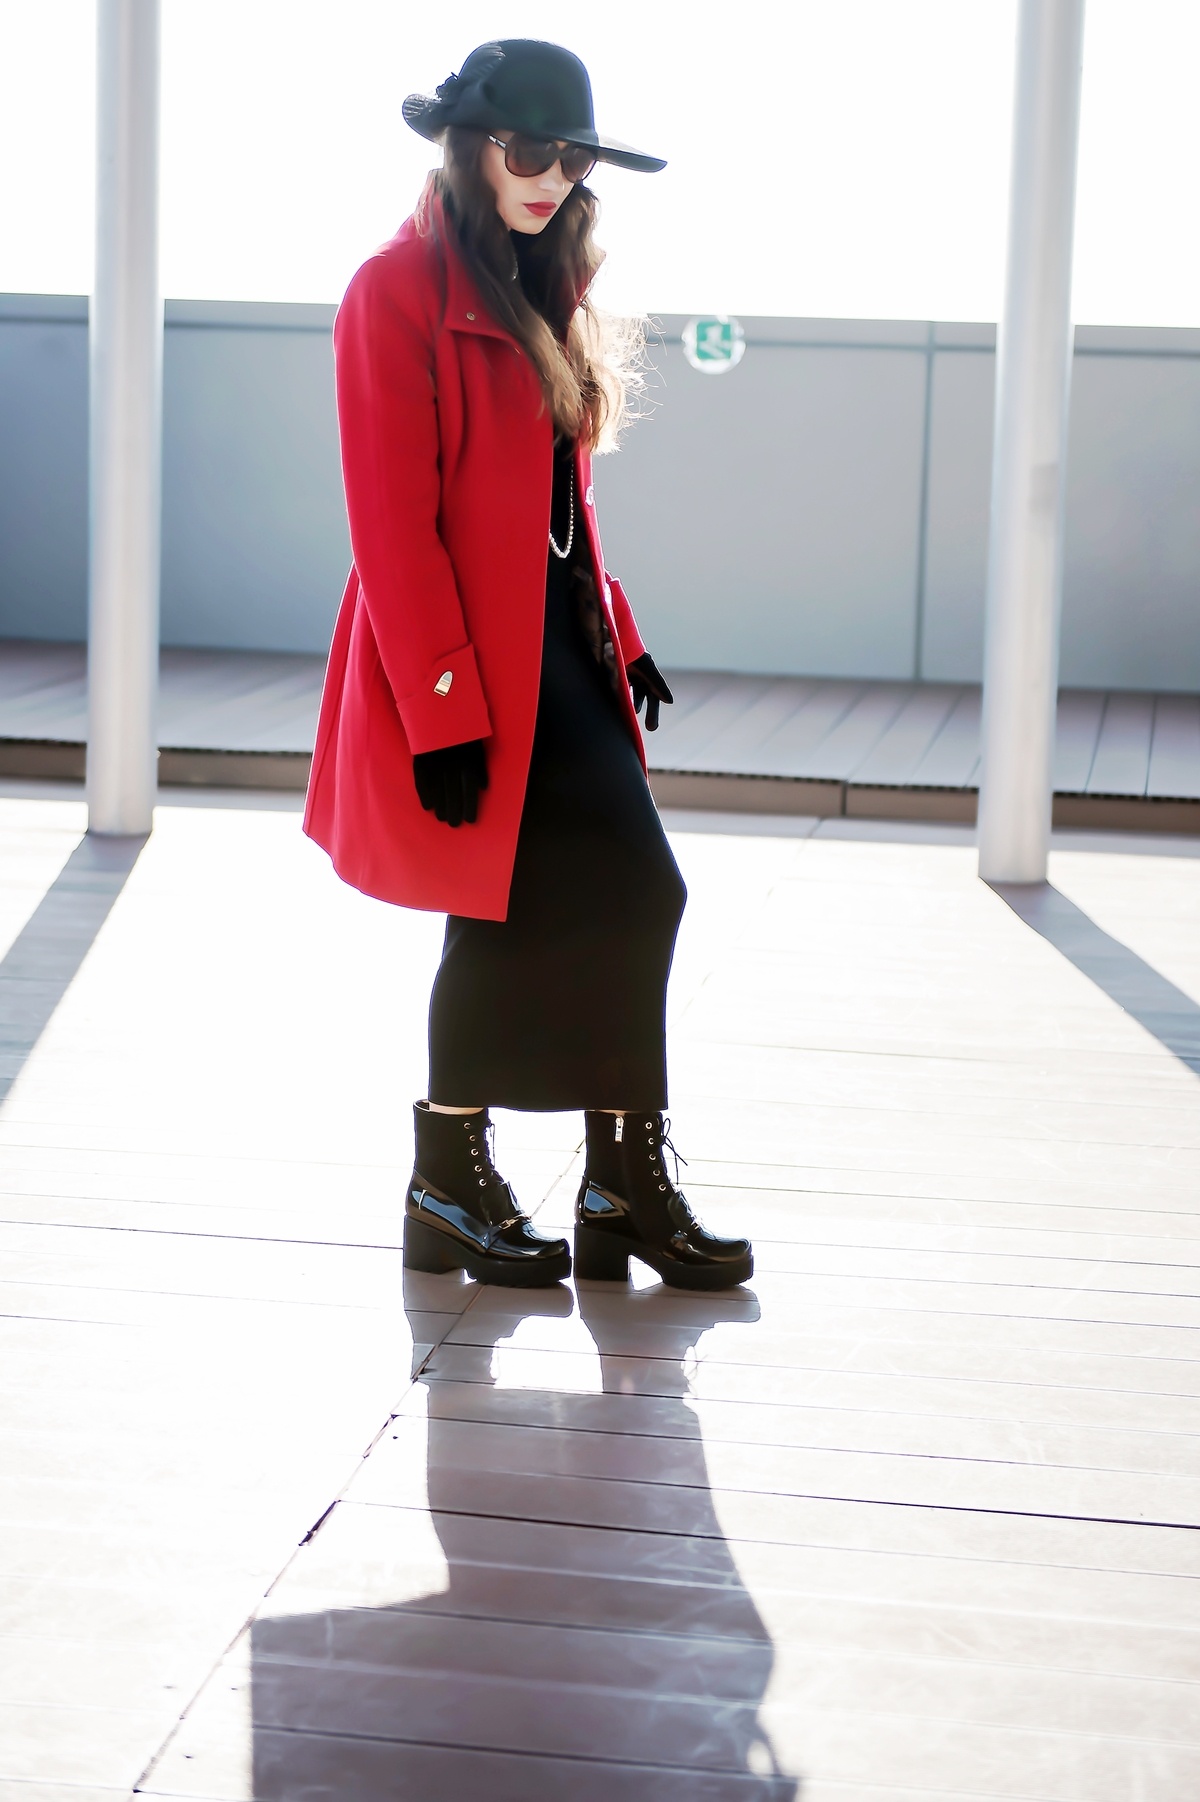 MY OUTFIT  Ținută casual: haină roșie și pălărie neagră